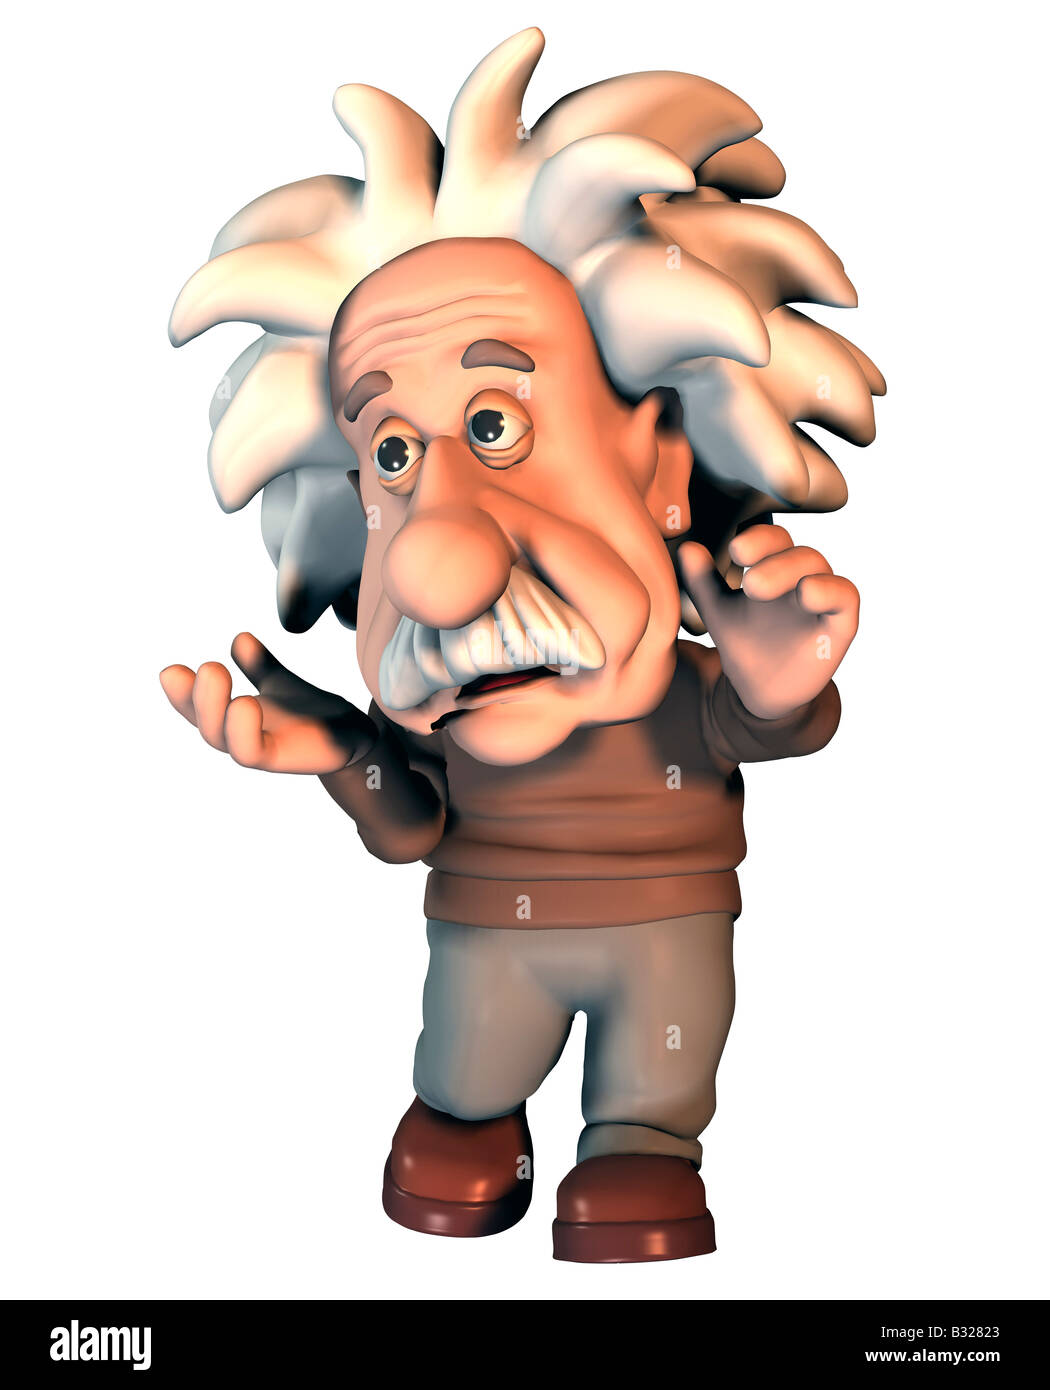 Albert Einstein german physicist Stock Photo